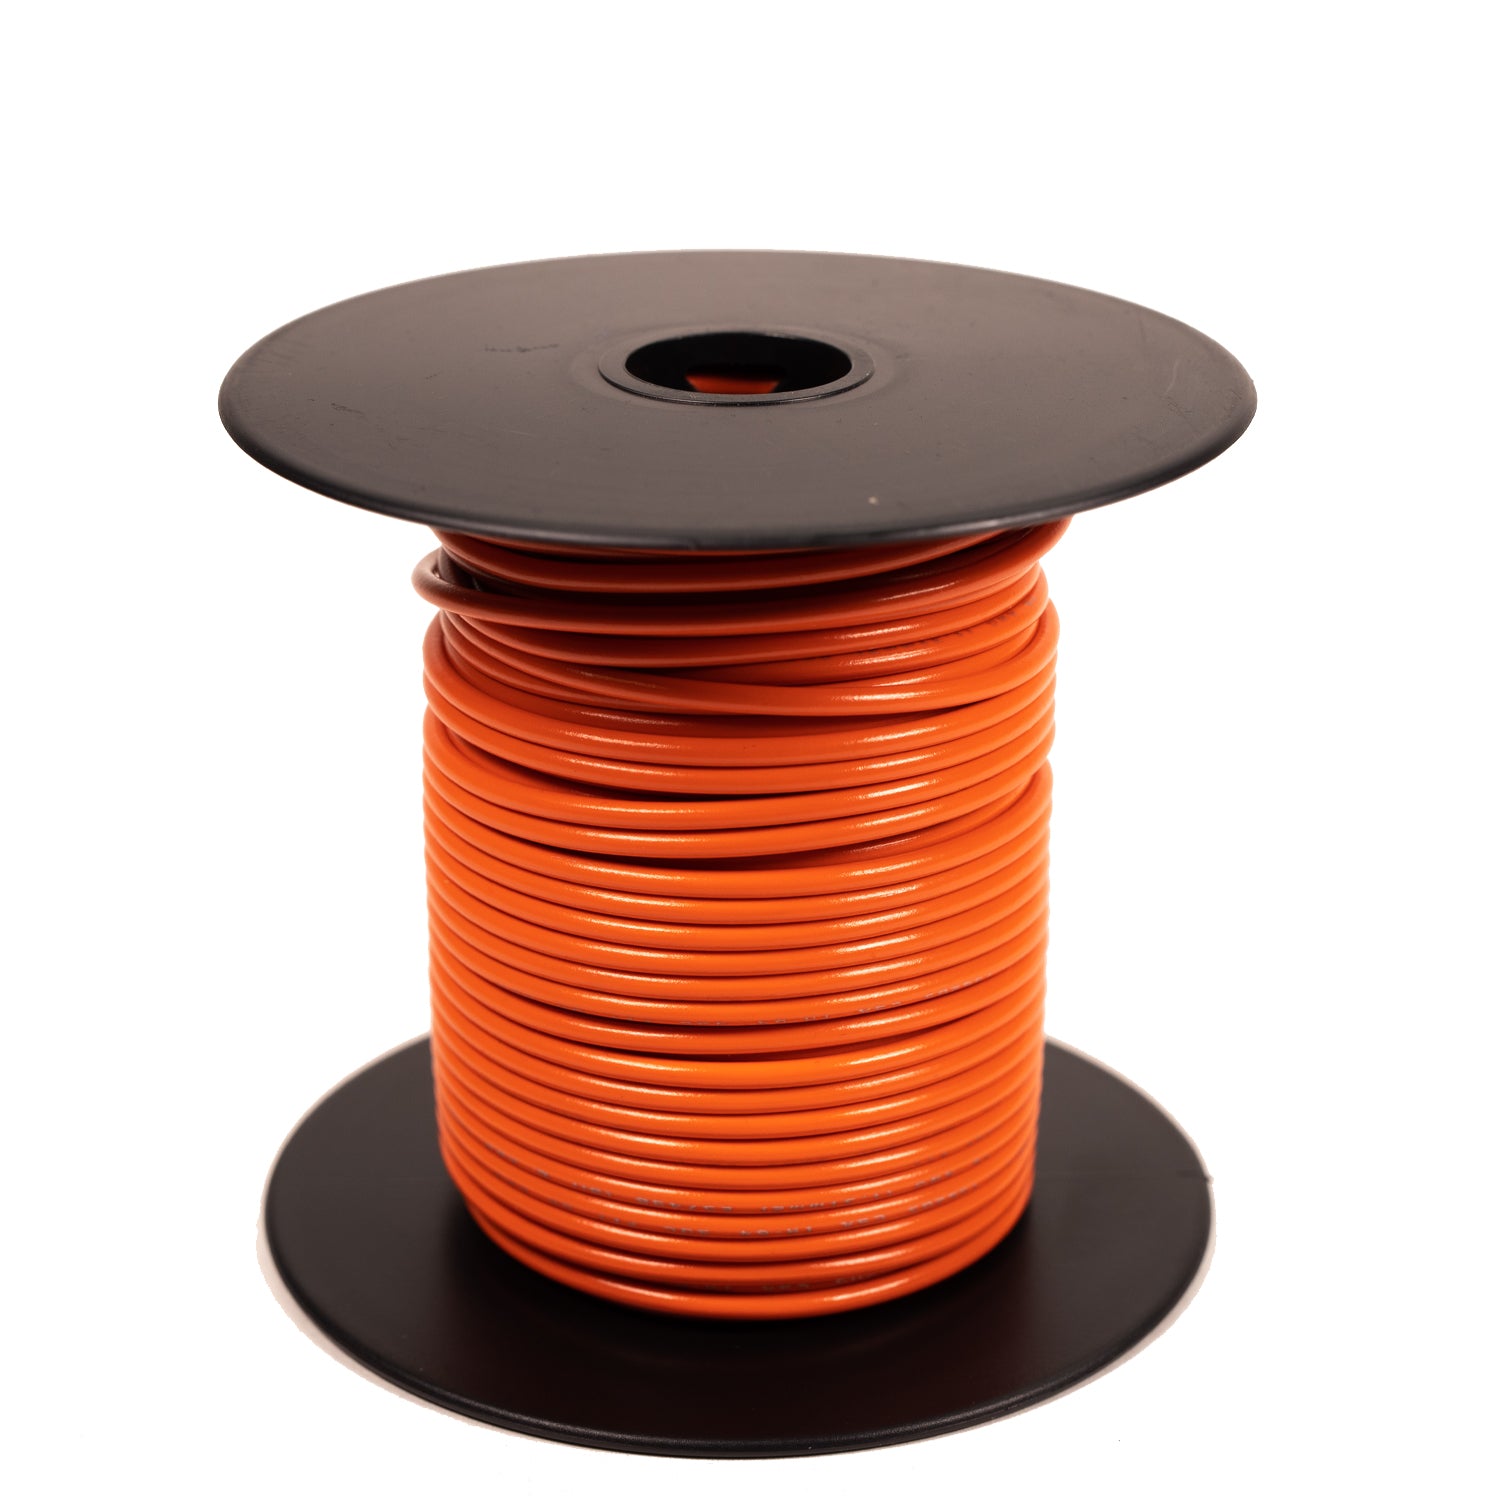 UL1015 600V Stranded Orange Wire, 18-10GA